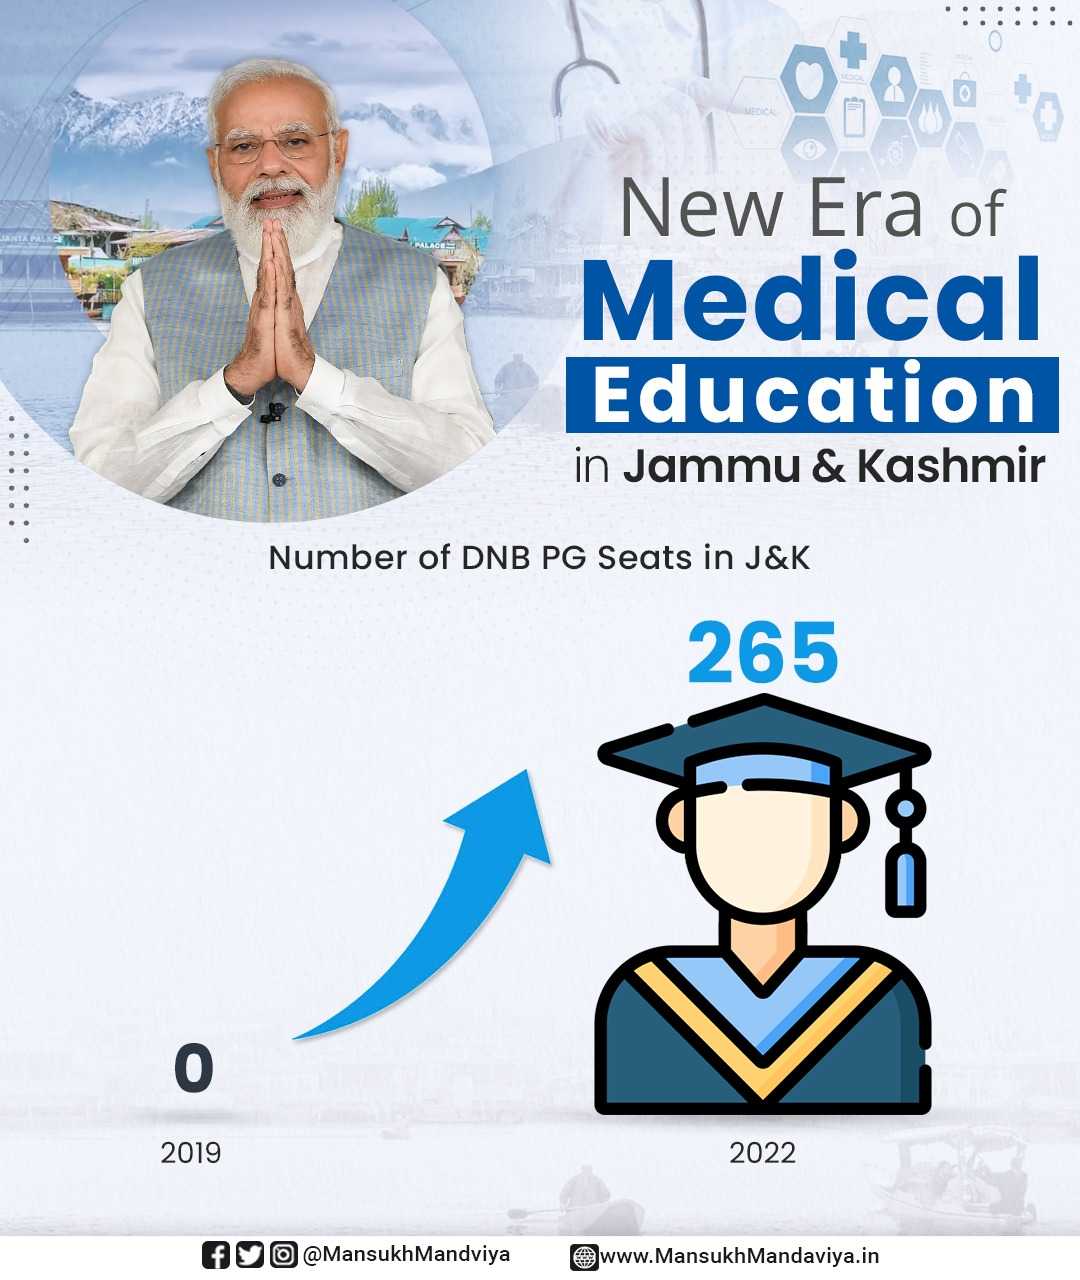 जम्मू आणि काश्मीरमध्ये सरकारनं वीस जिल्हा शासकीय रुग्णालयात 265 डीएनबी पदव्युत्तर वैद्यकीय जागांना दिली परवानगी